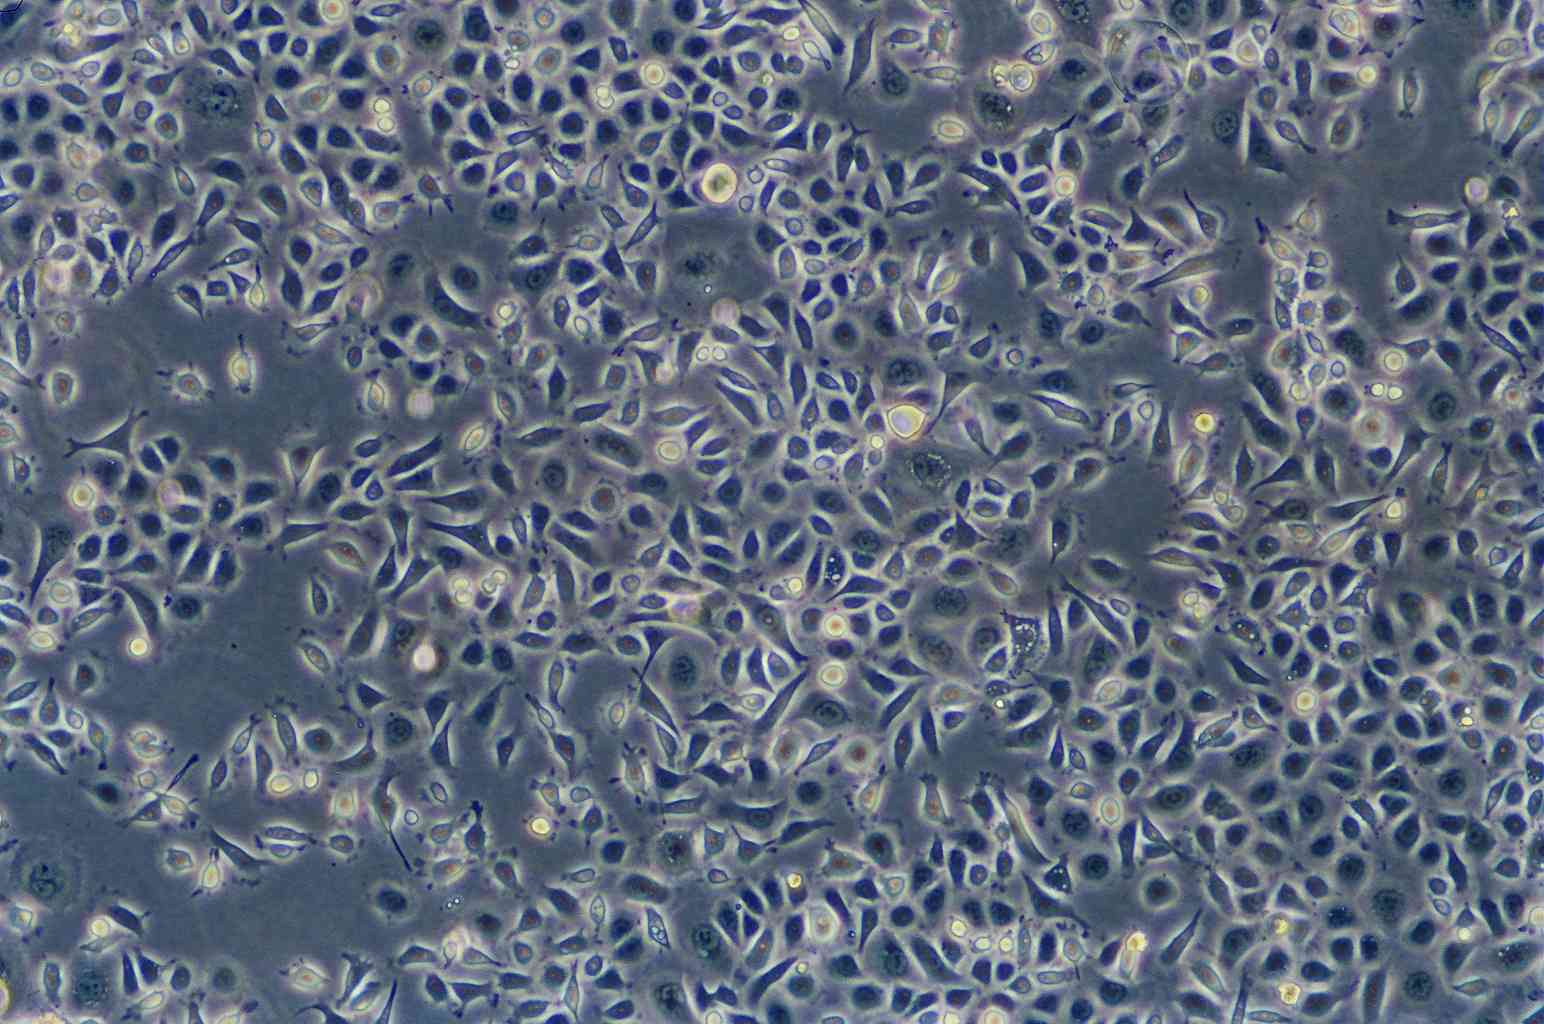 COLO 699 Cells|人肺癌腺癌可传代细胞系